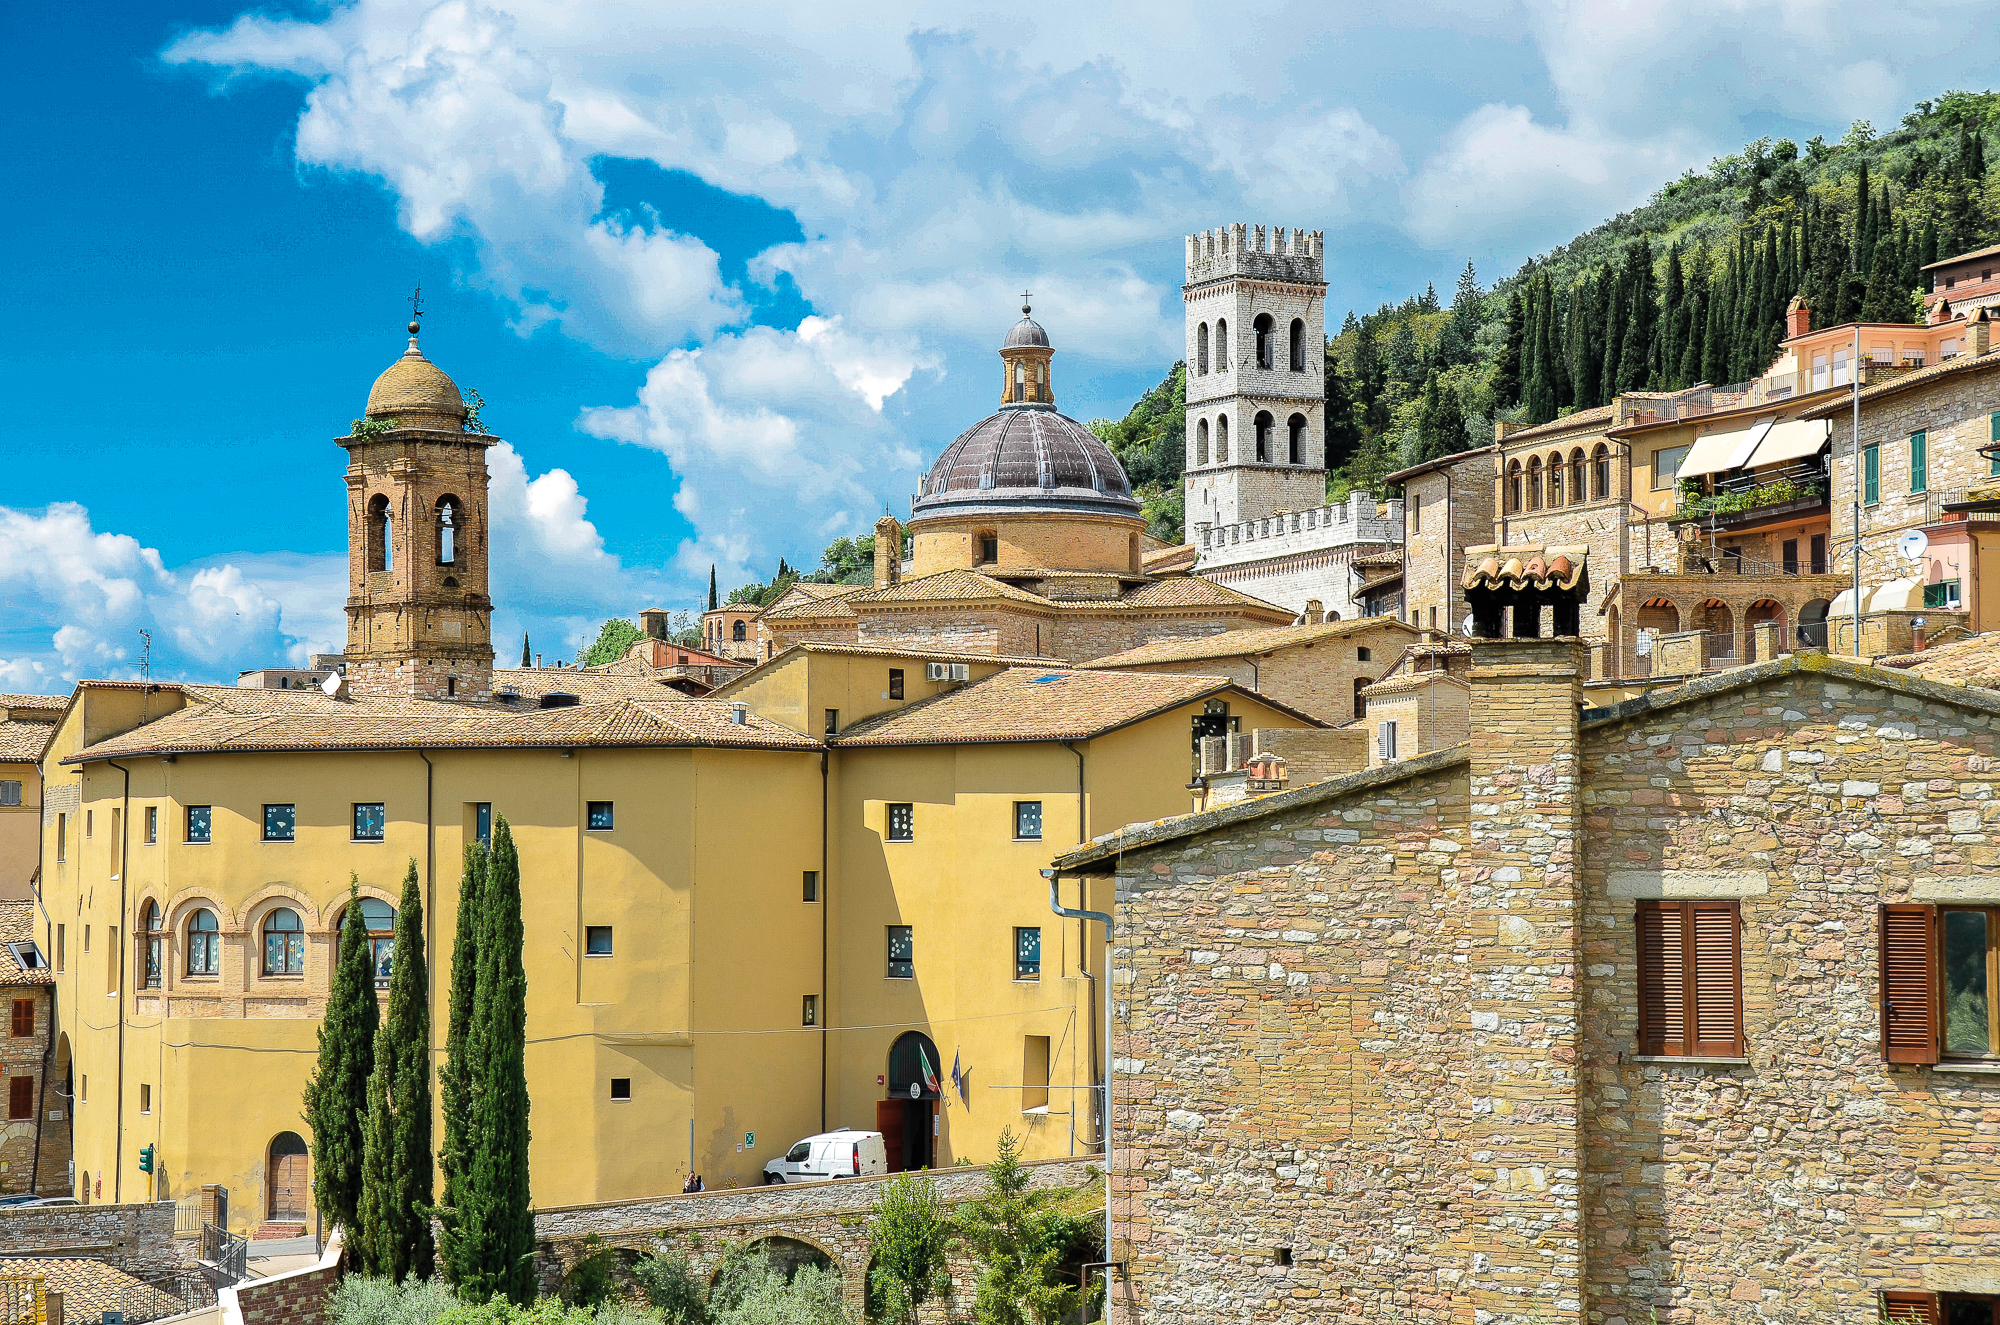 Radreise Umbrien, im Bild das wunderschöne Assisi